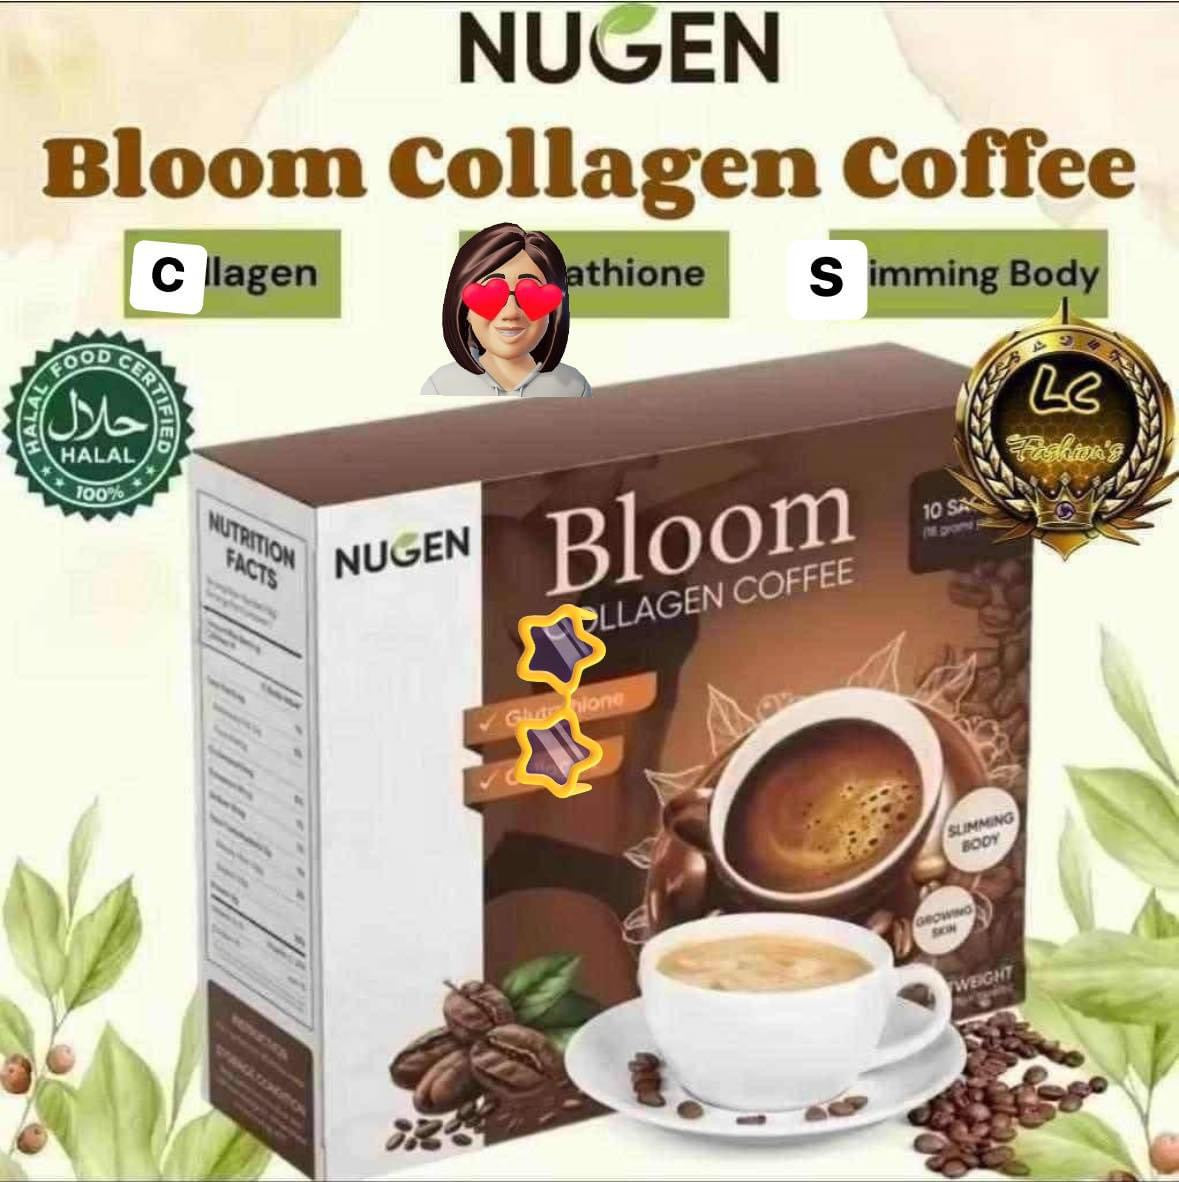 NUGEN- Bloom Collagen Coffee 10x X 10sachet